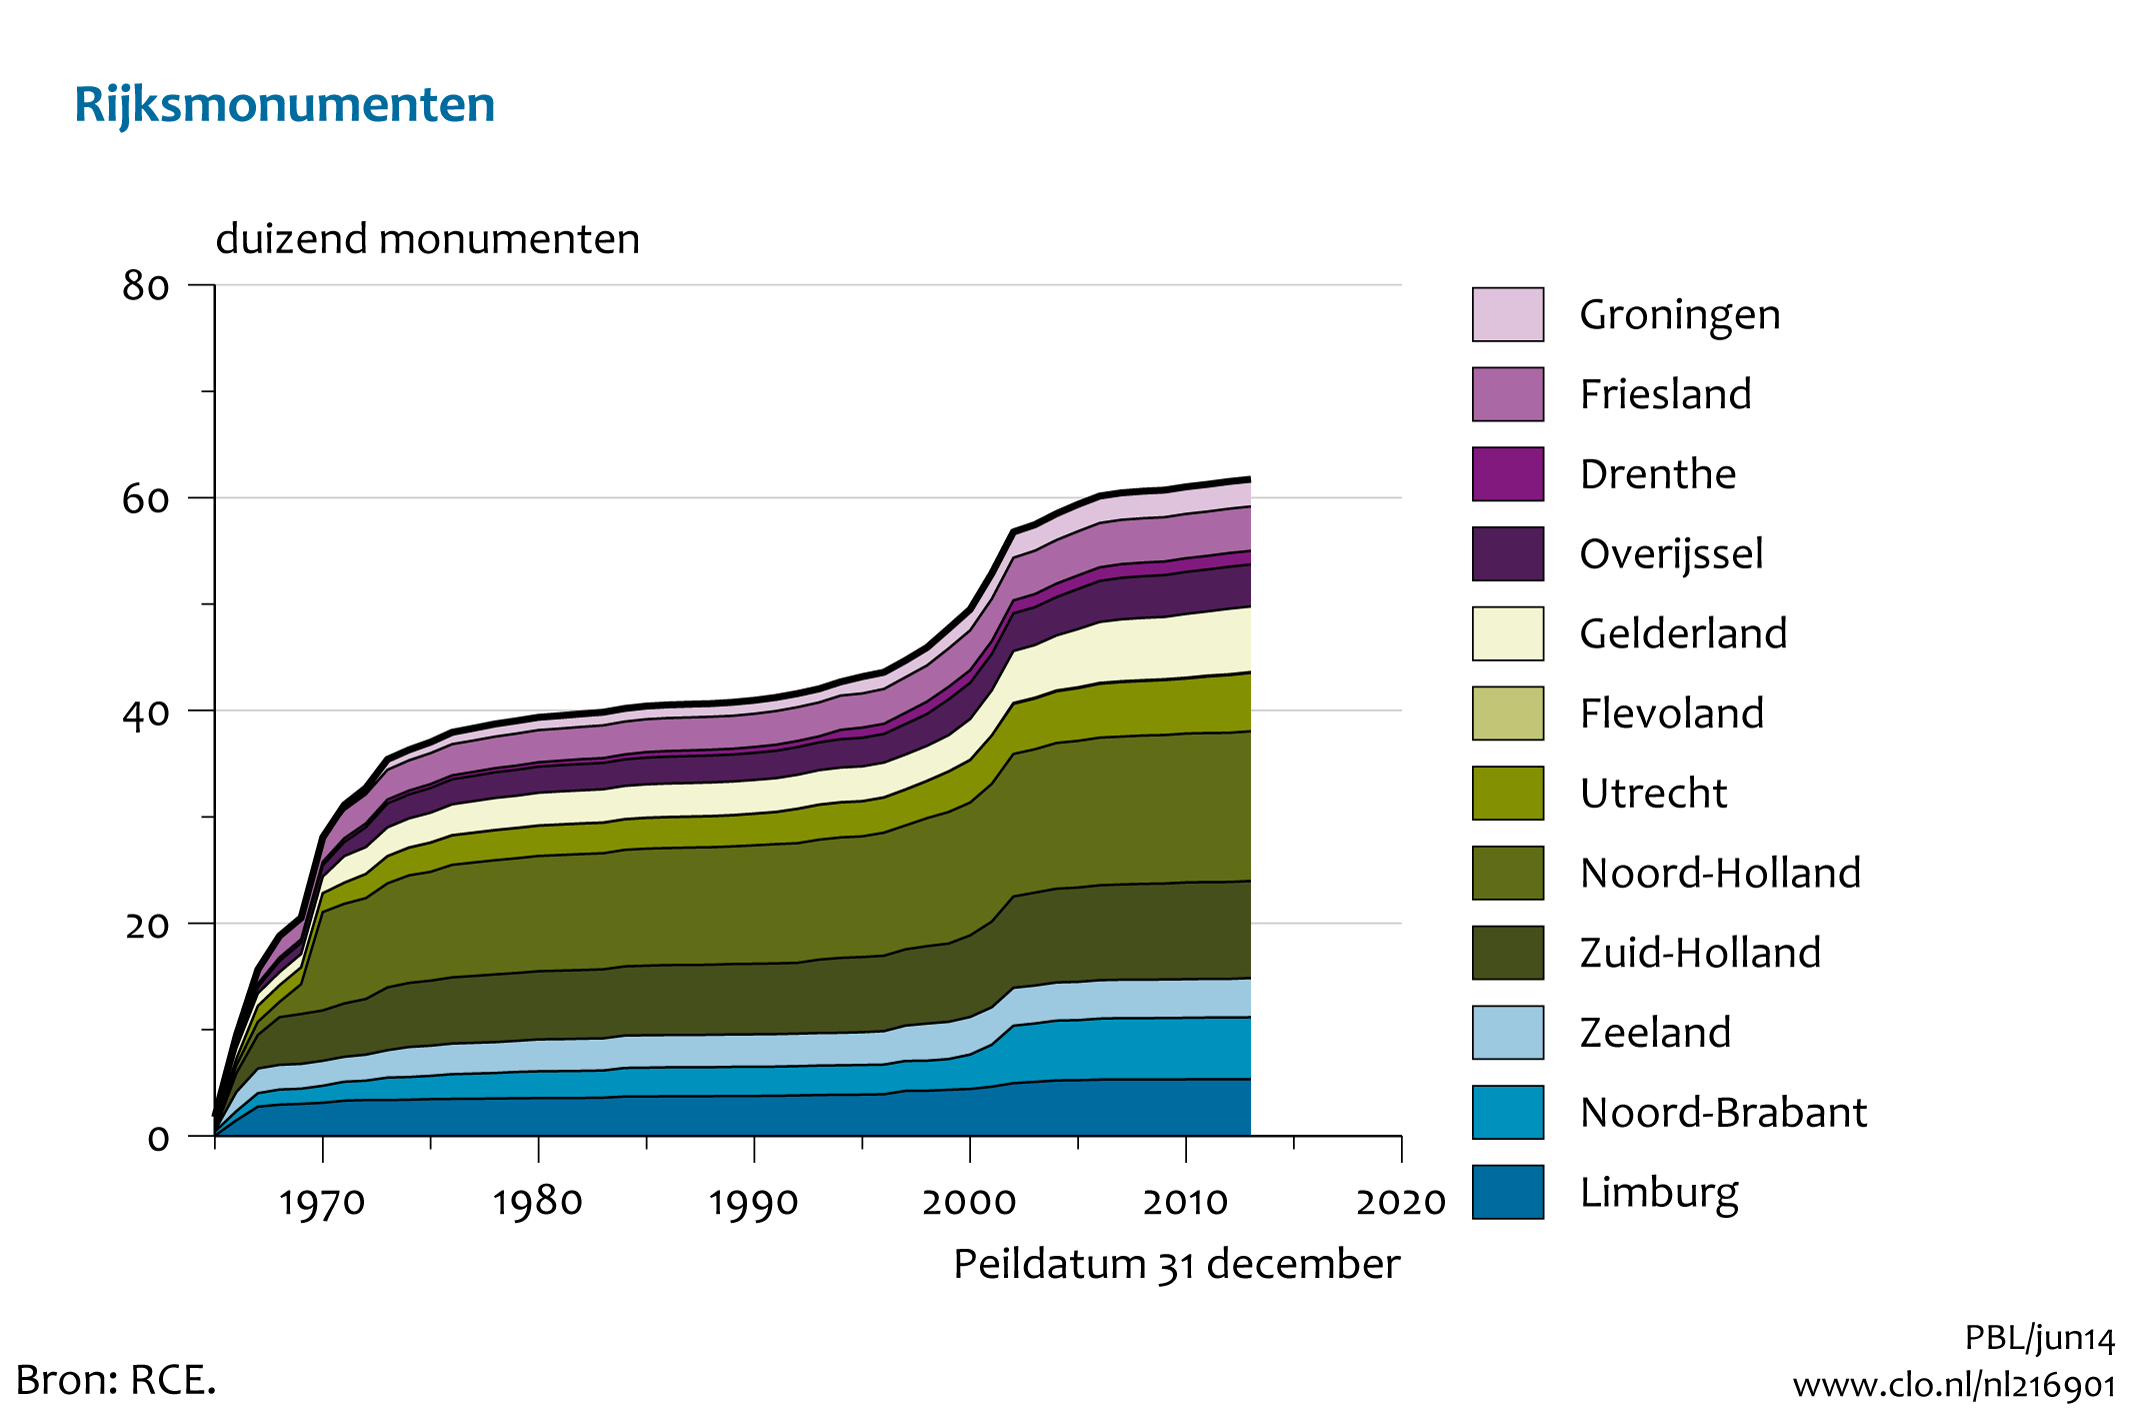 Figuur Ontwikkeling aantal beschermde Rijksmonumenten per provincie . In de rest van de tekst wordt deze figuur uitgebreider uitgelegd.